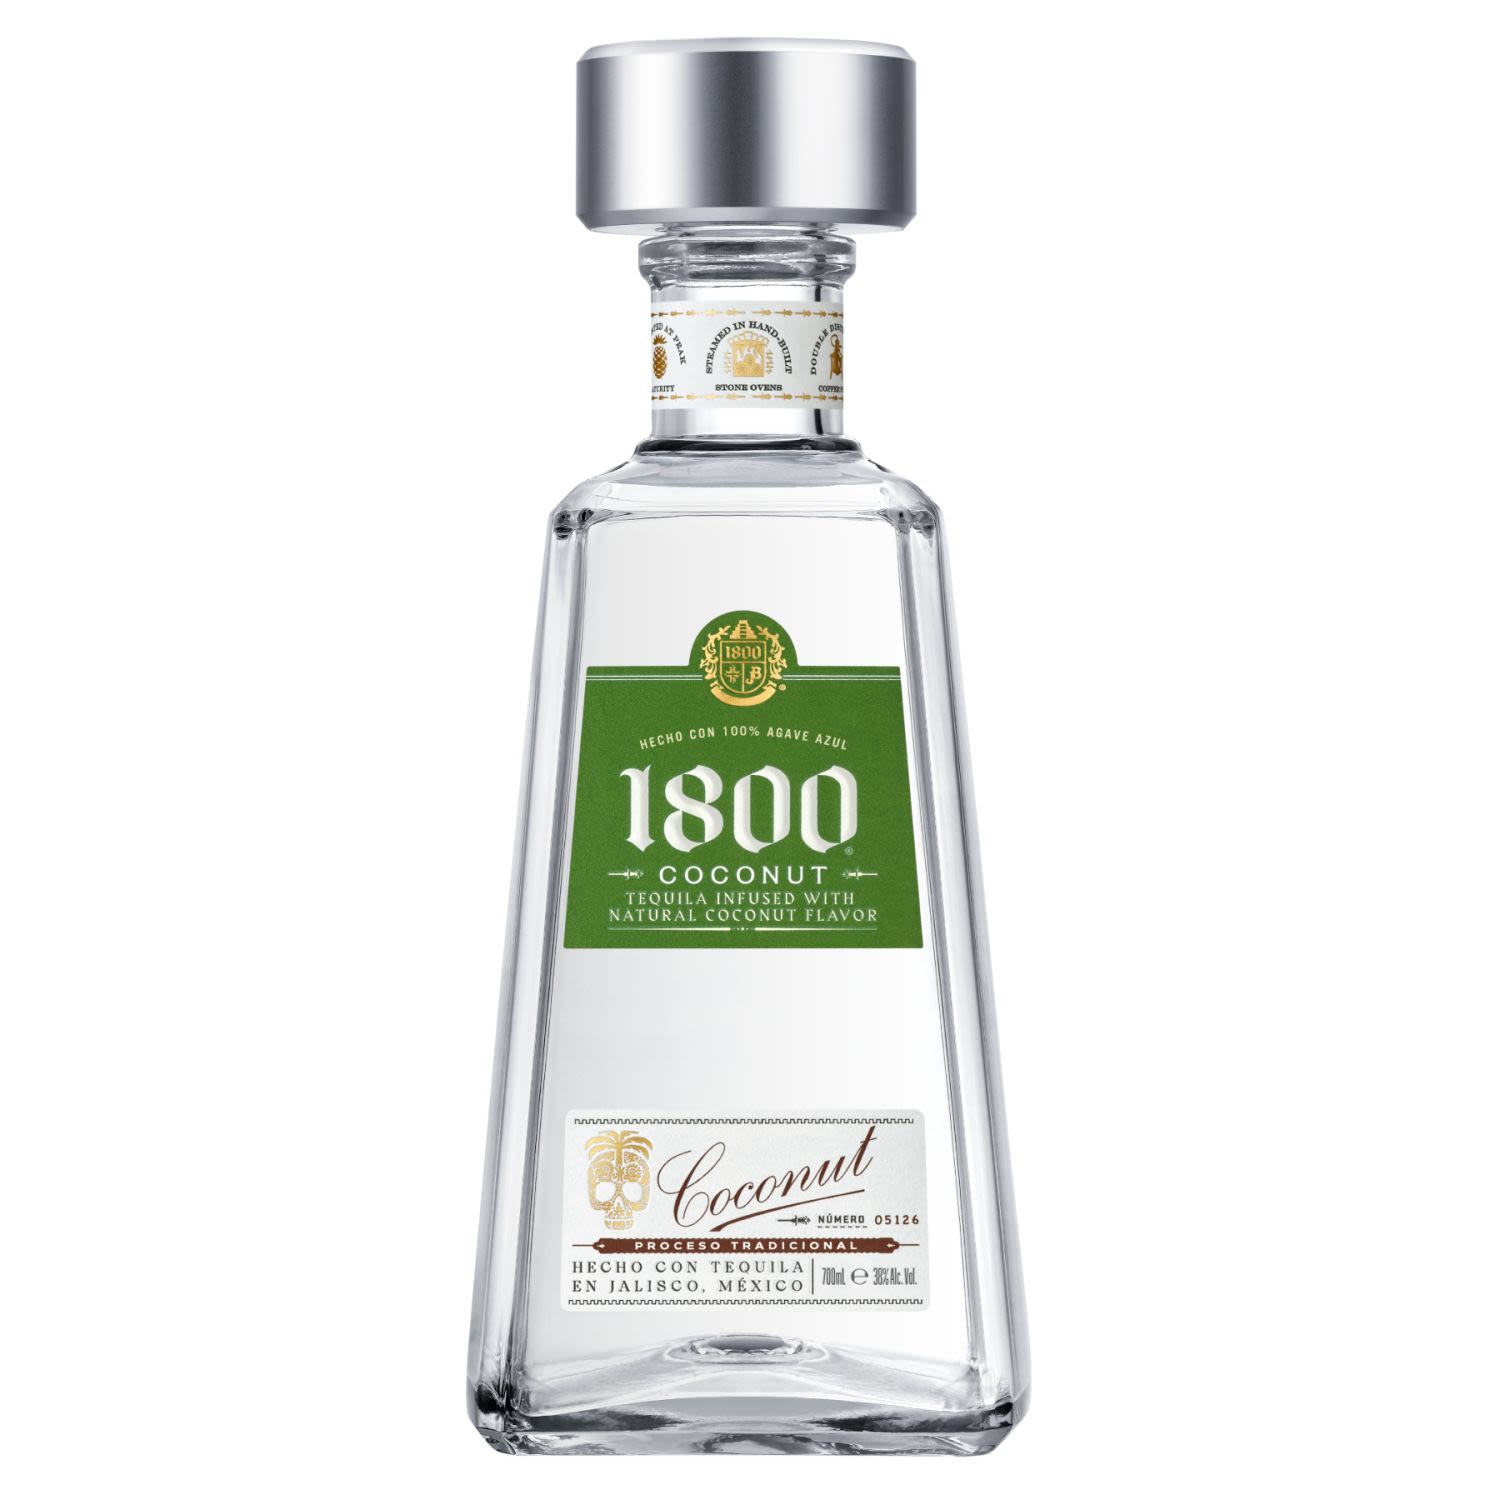 1800 Coconut Tequila 700mL Bottle